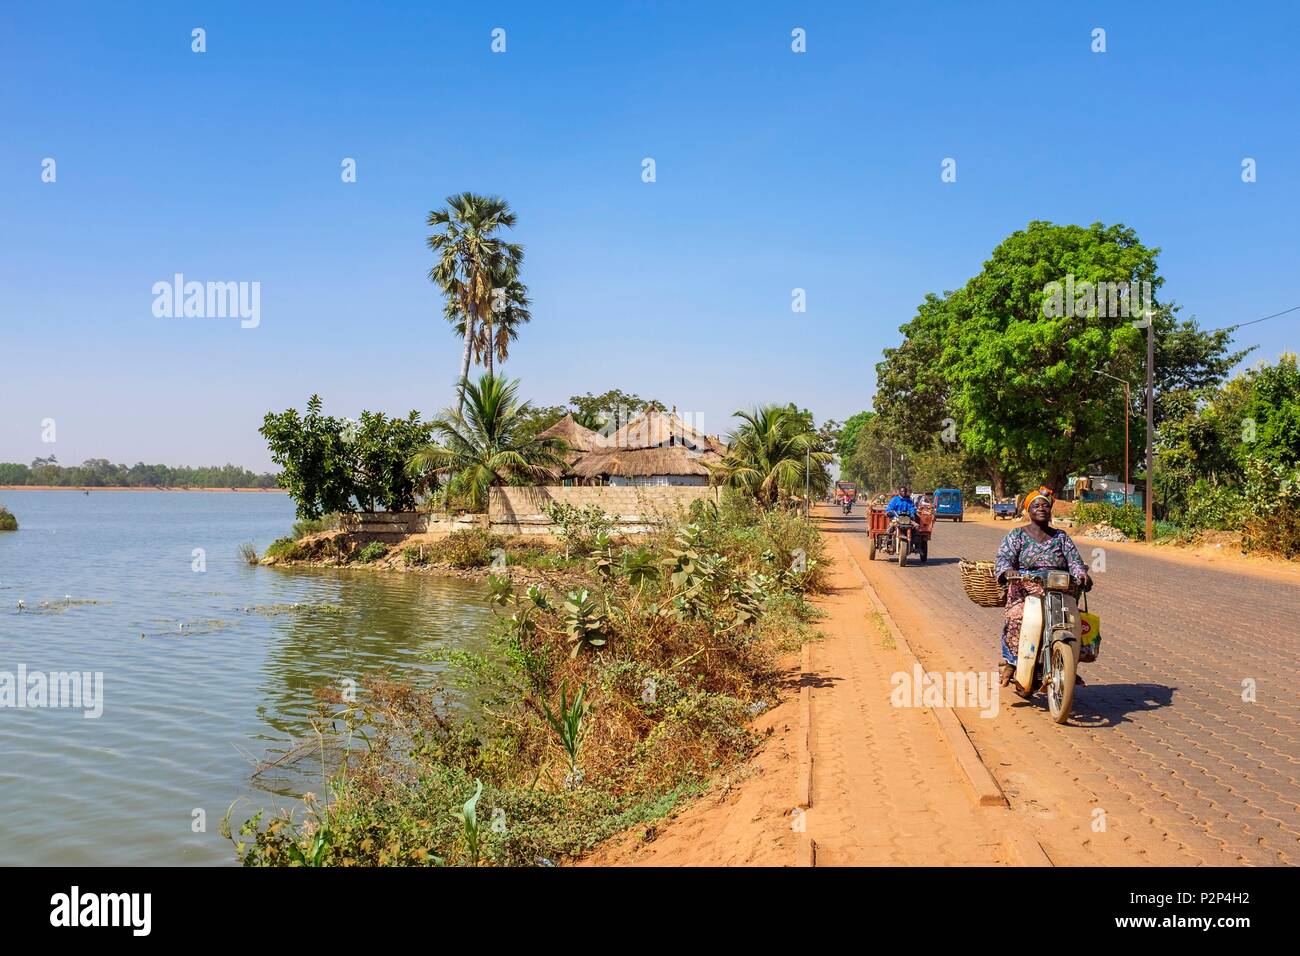 Le Burkina Faso, région Centre, Ouagadougou, le lac de barrage barrage numéro 3 Banque D'Images